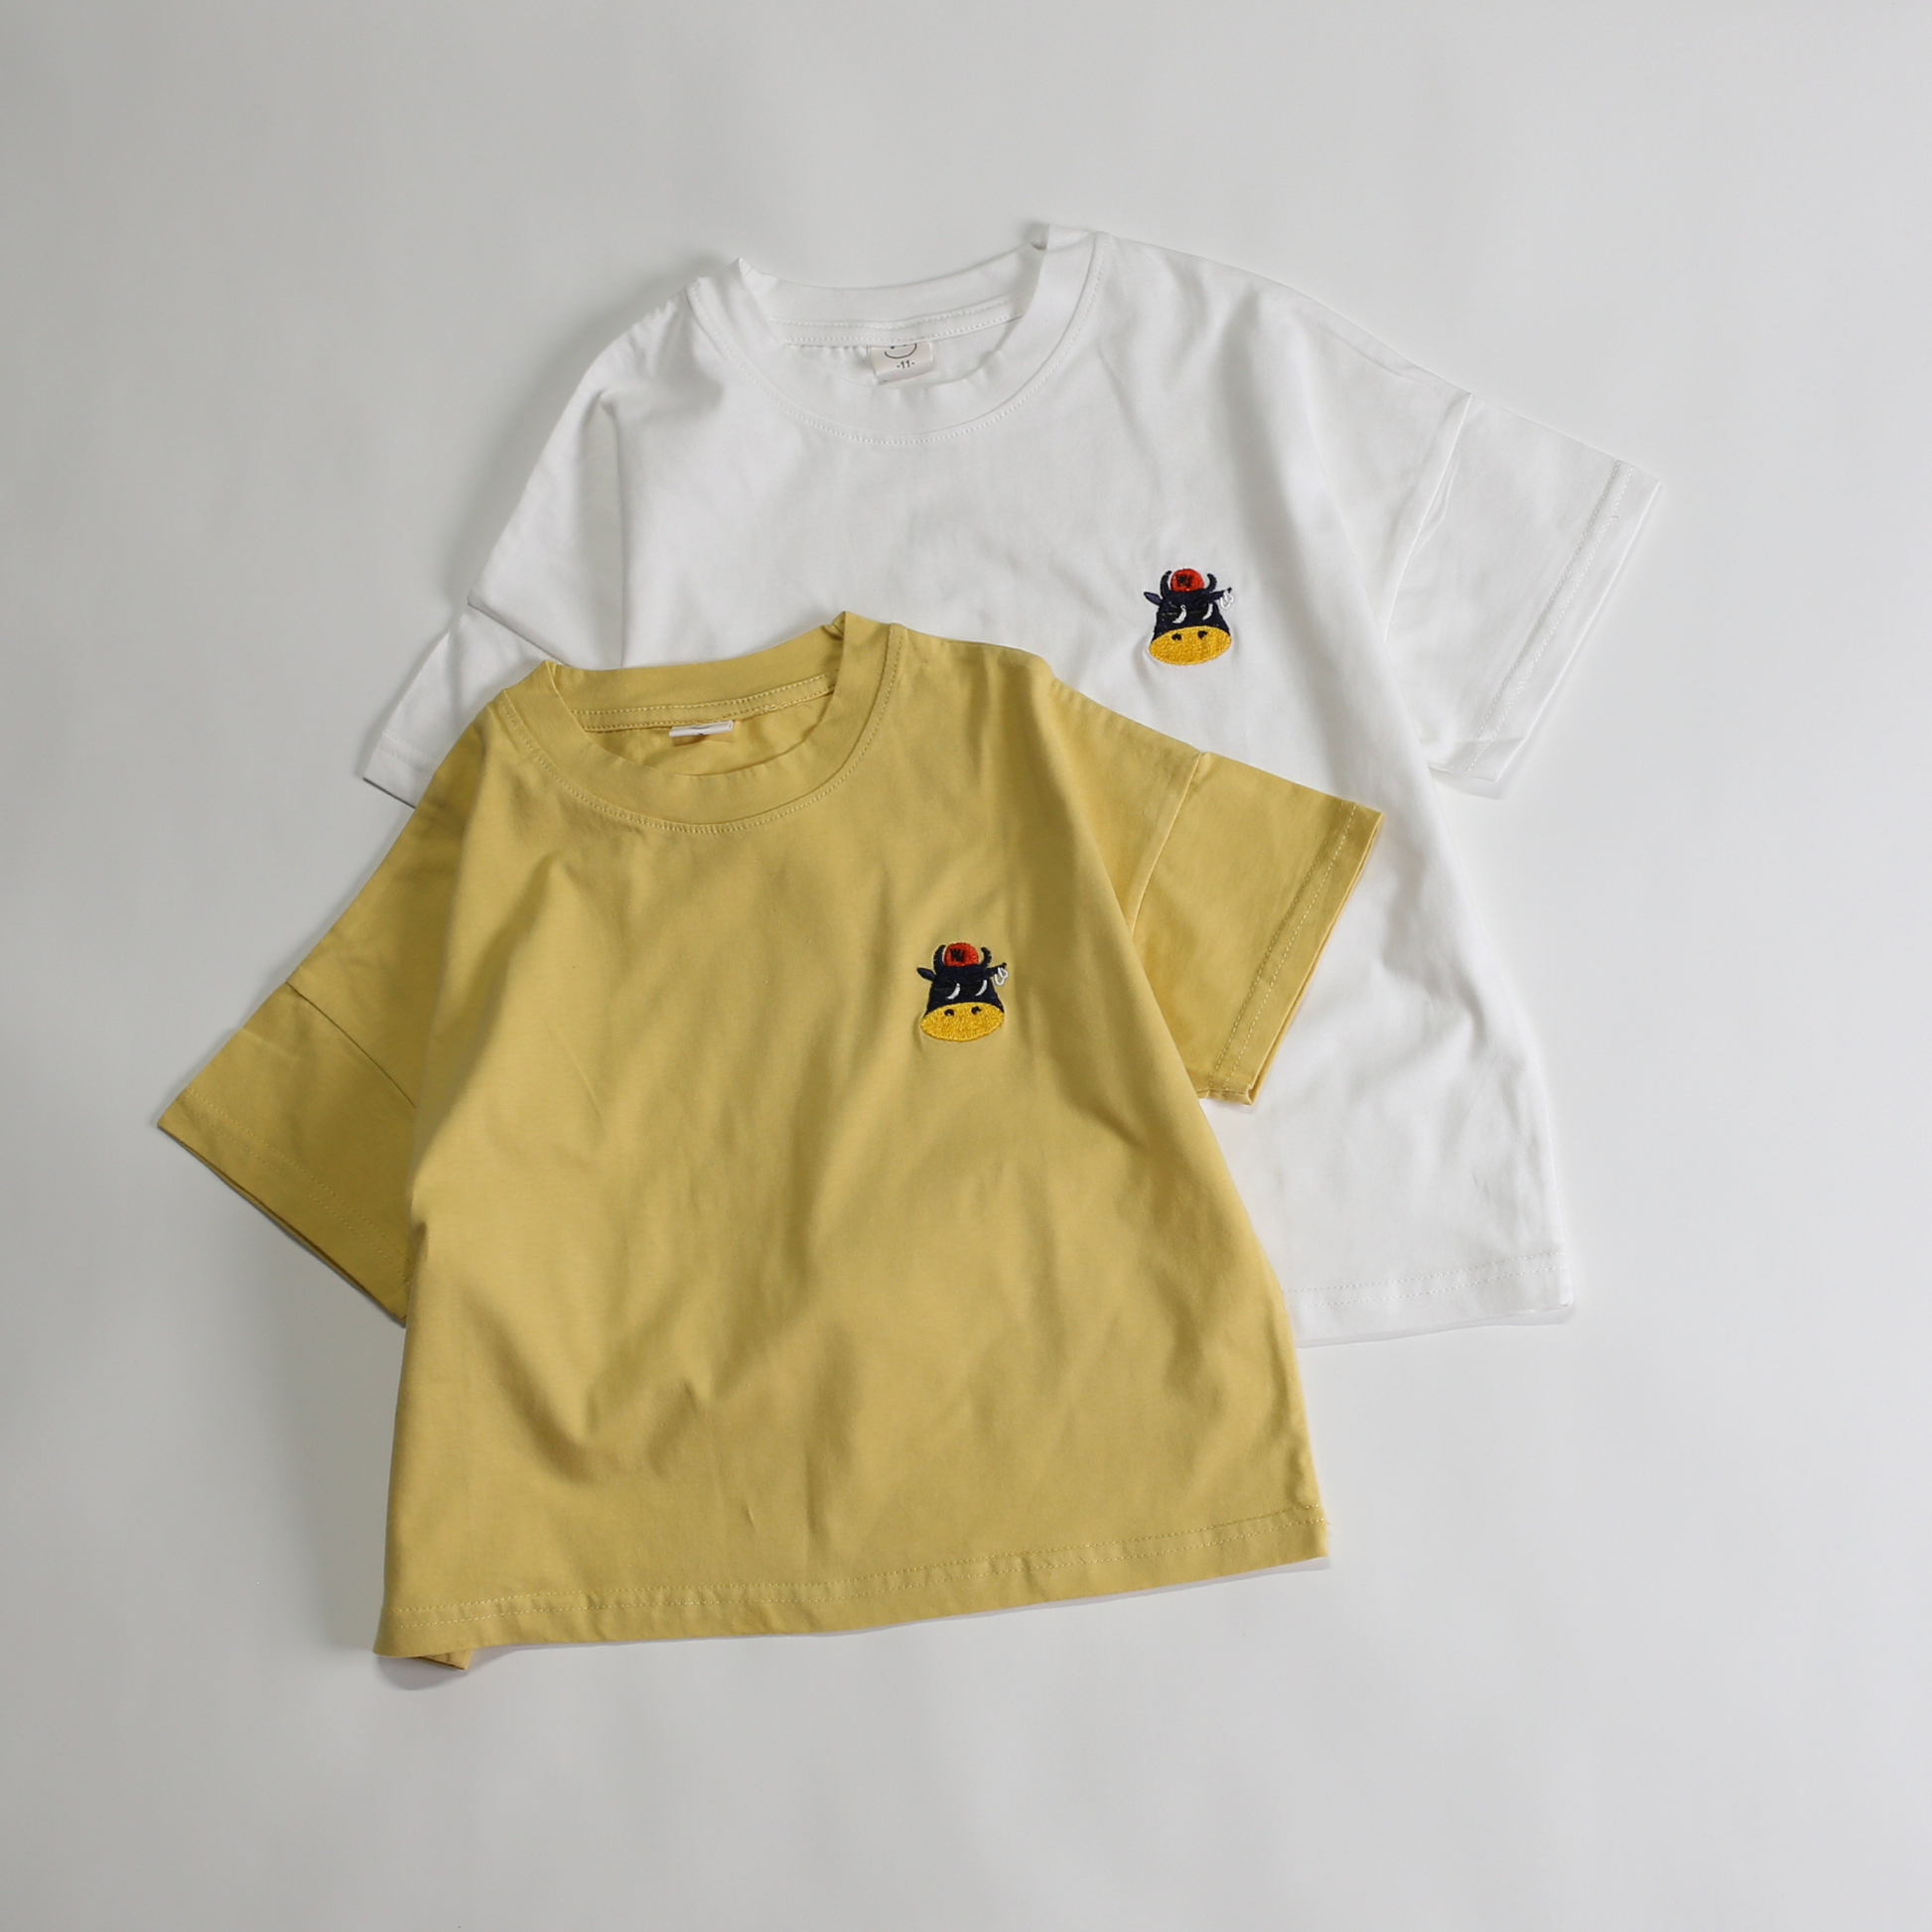 ワンポイント cowステッチ Tシャツ / one point cow stitch Tee (こども服) - kids clothes shop GUZUGUZU